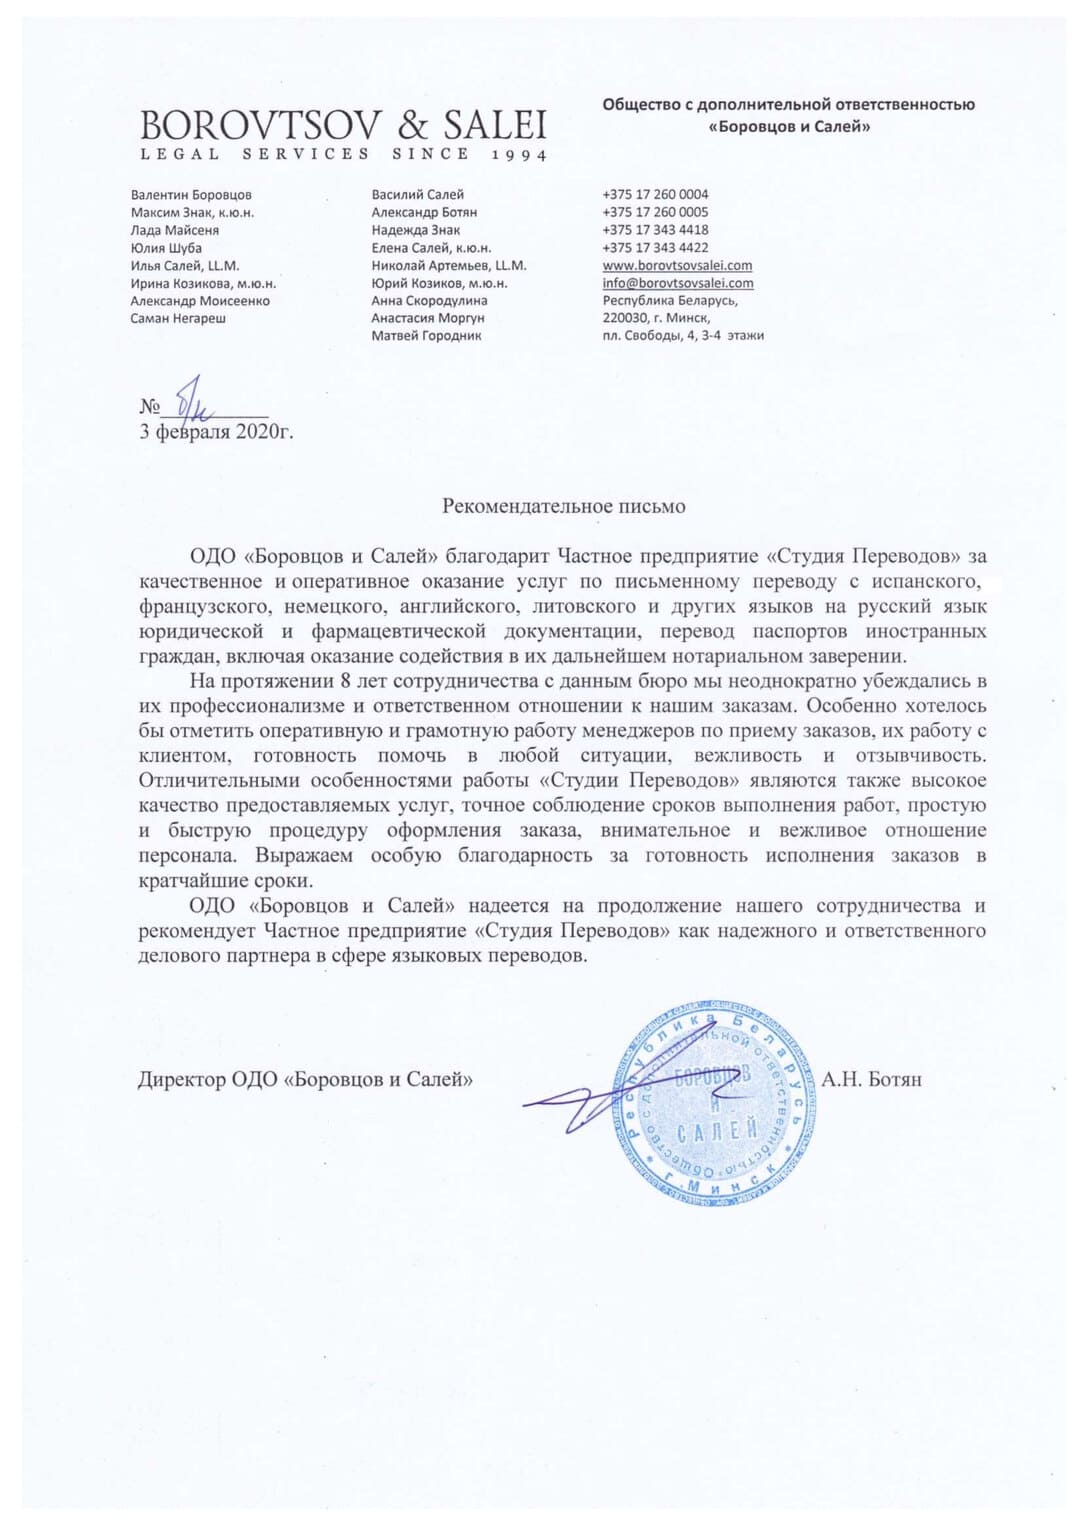 Рекомендательное письмо Borovtsov & Salei (Боровцов и Салей)